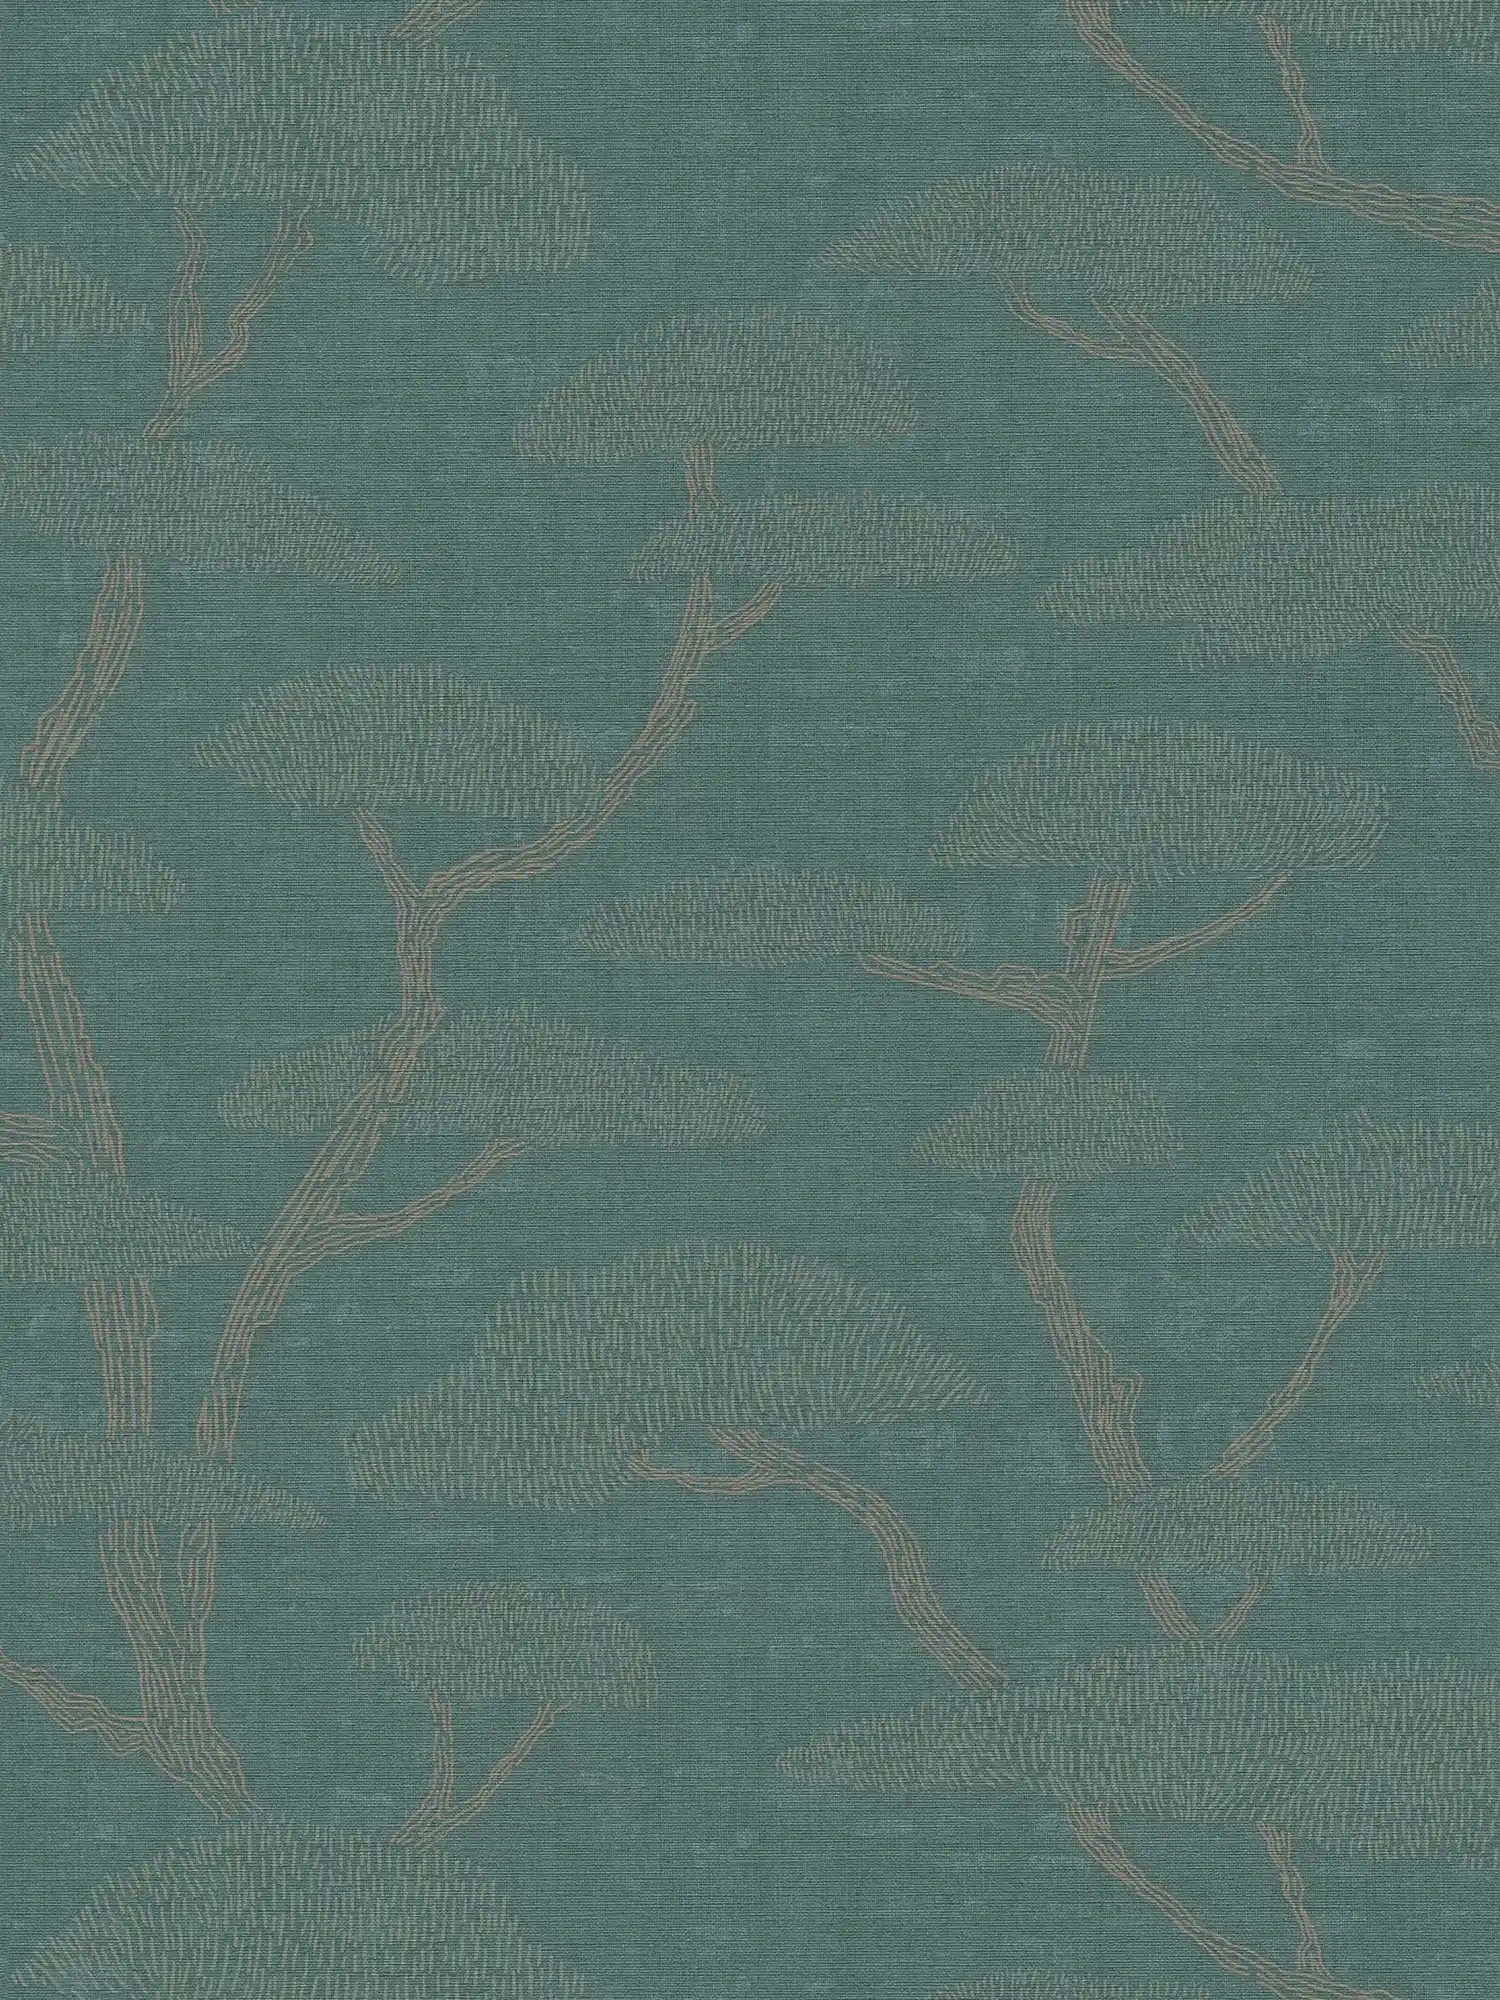 Natuurlijk behang boom patroon dennen in Azië stijl - groen
